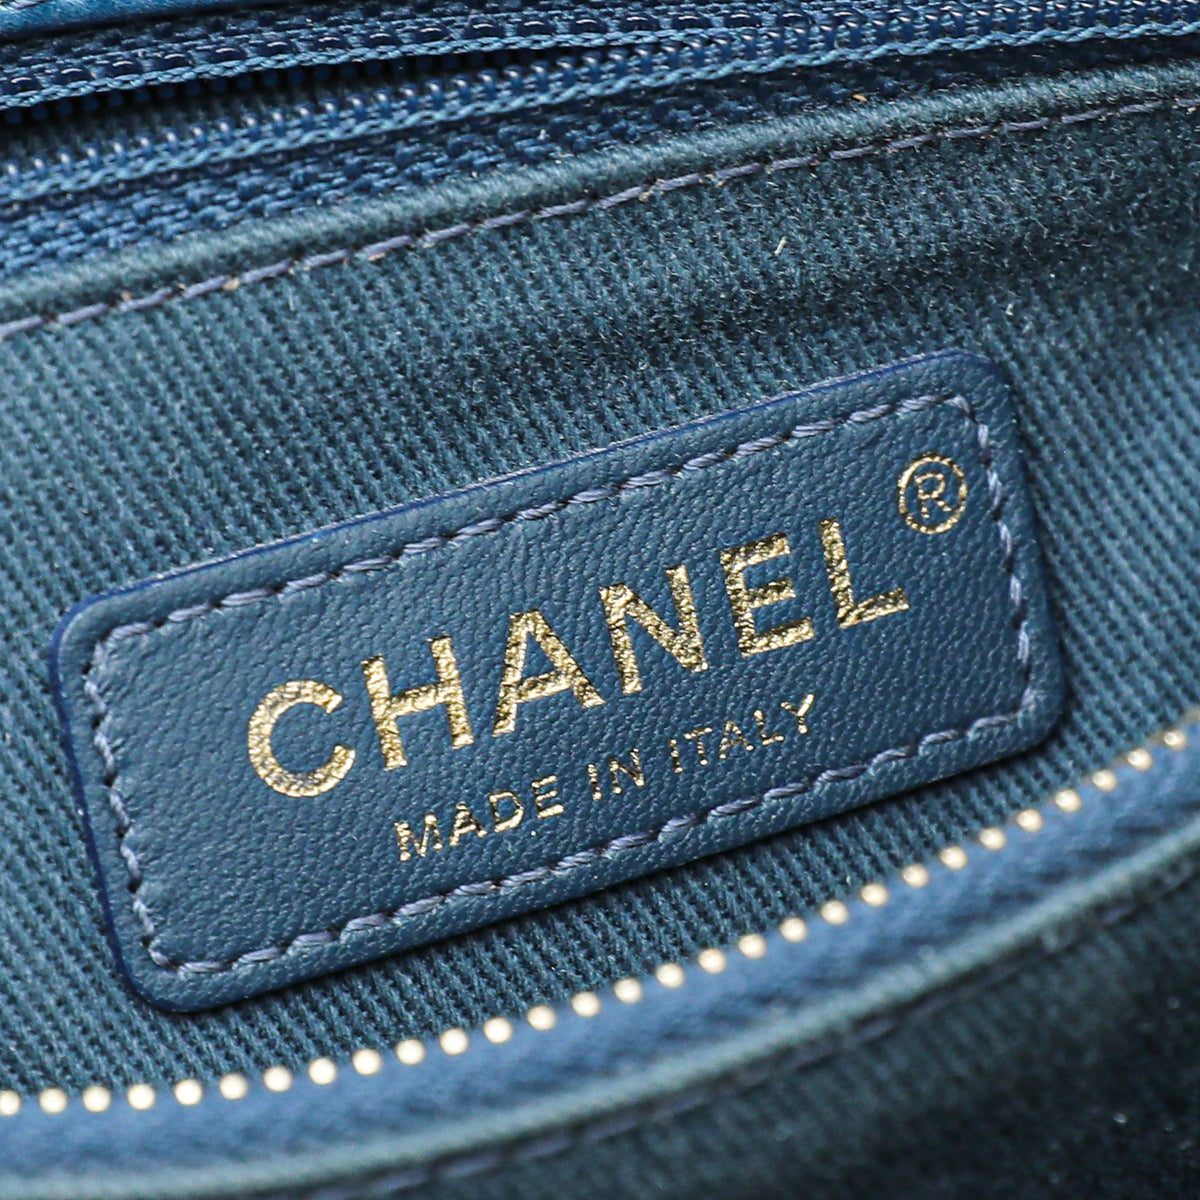 Chanel Blue Coco Handle Chevron Small Bag